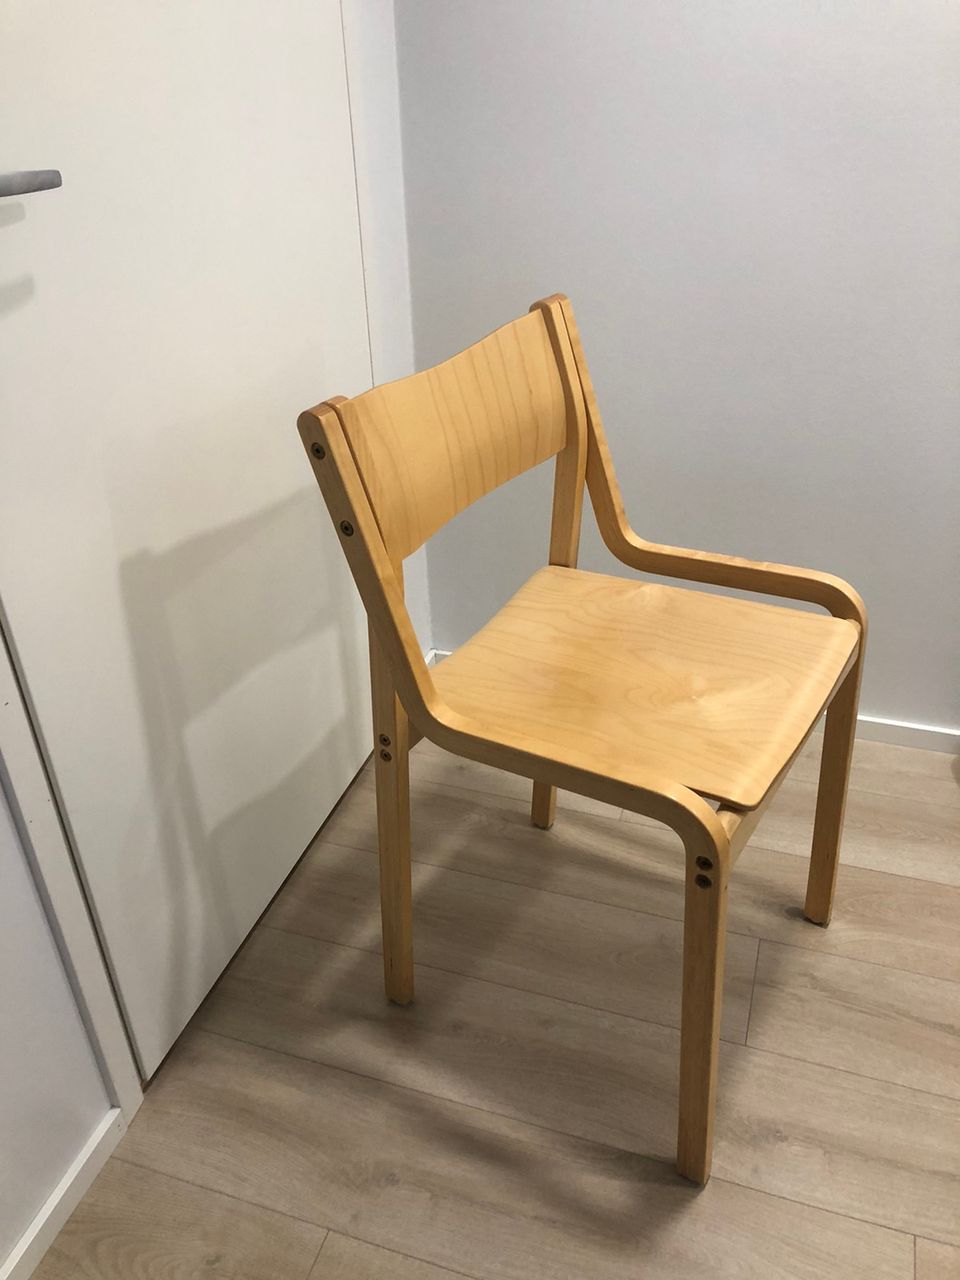 Myydään puinen tuoli